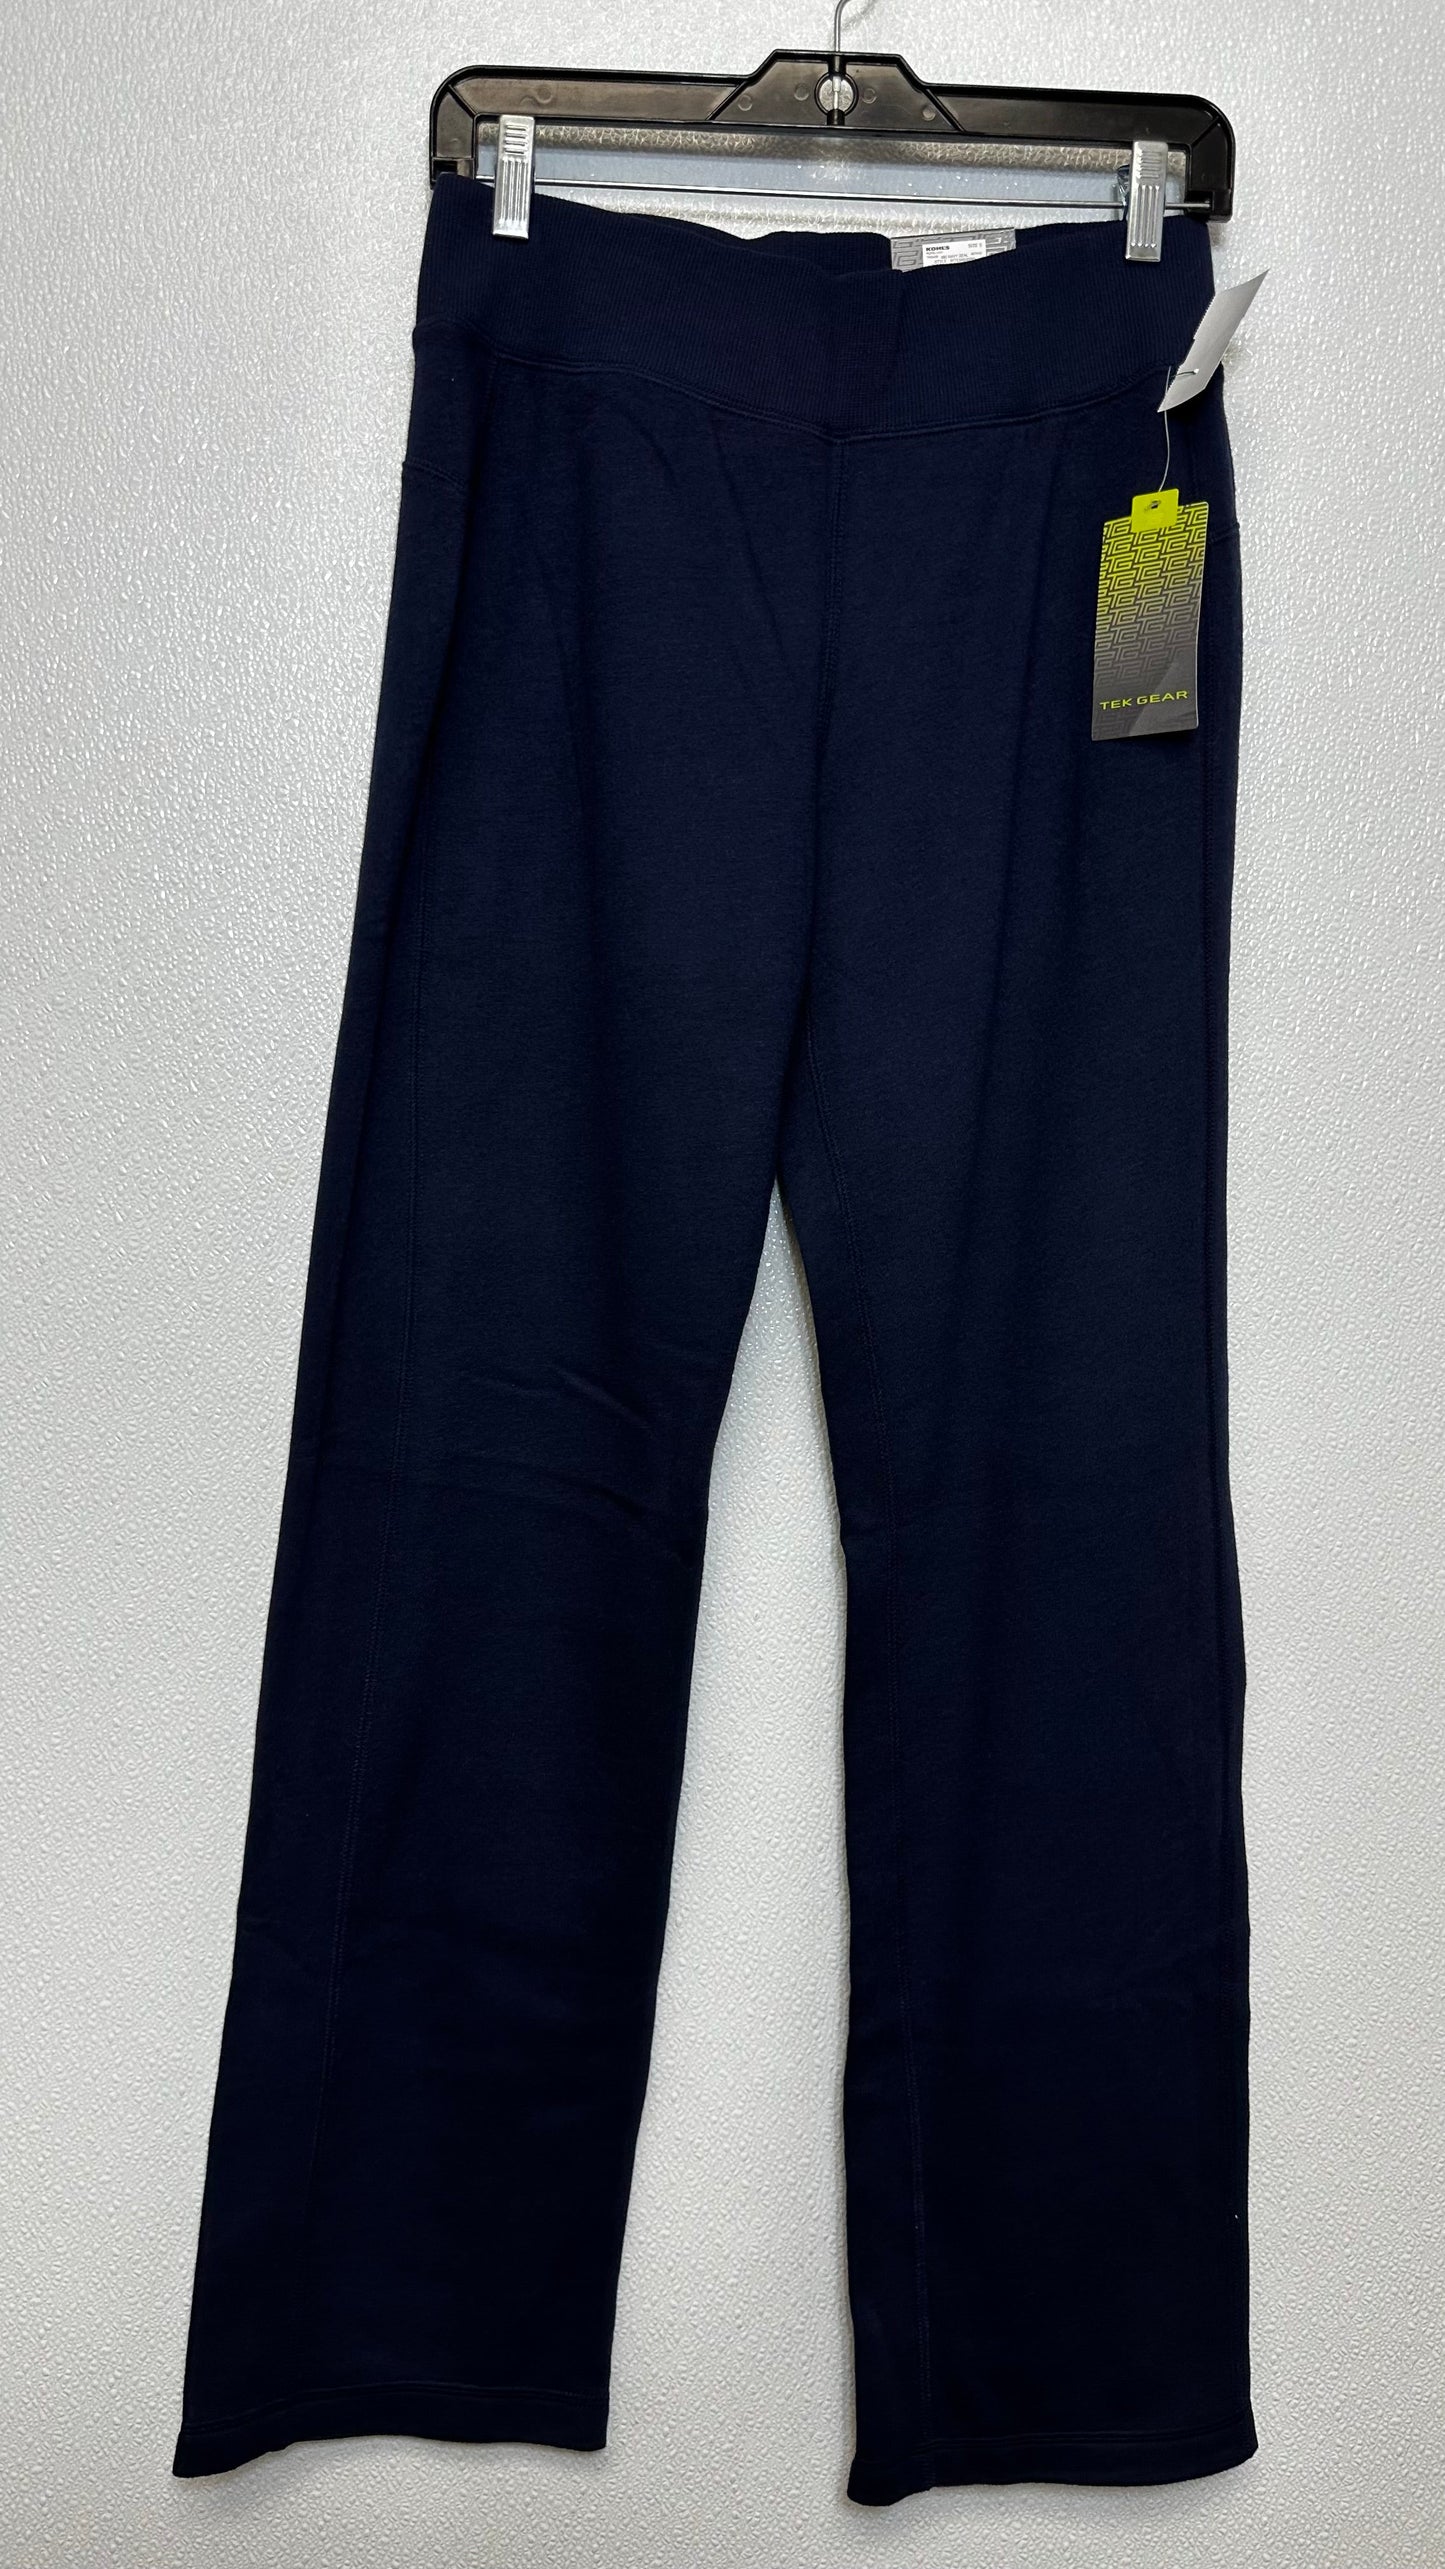 Navy Athletic Pants Tek Gear, Size S